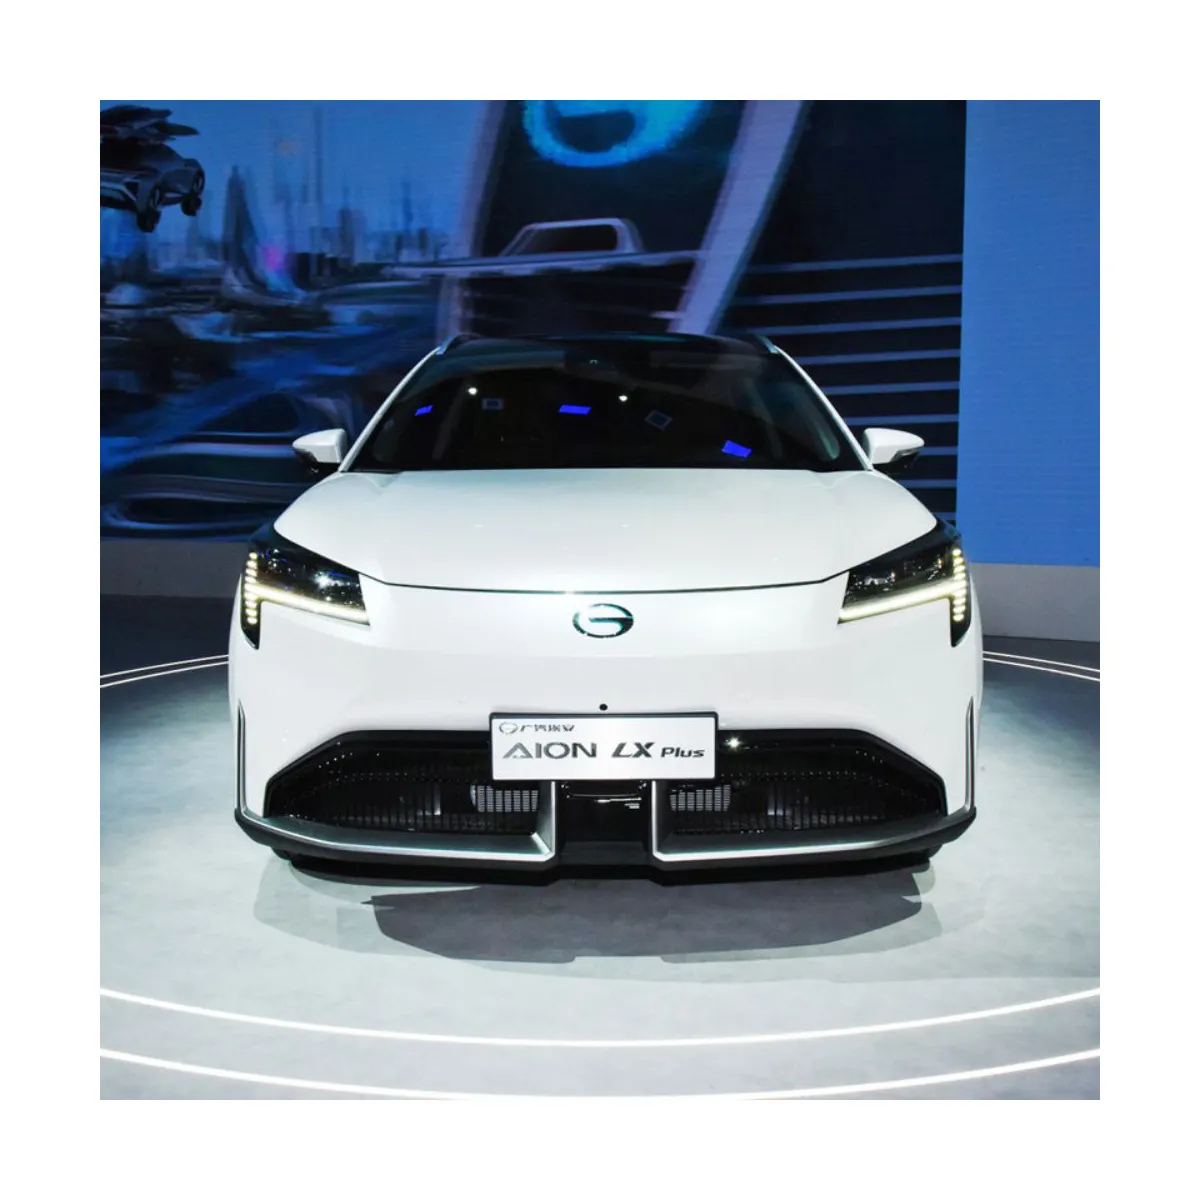 Aion Lx 1008Km coches nuevo 32 colores luz ambiental 540 grados imagen inteligente Suv coche usado